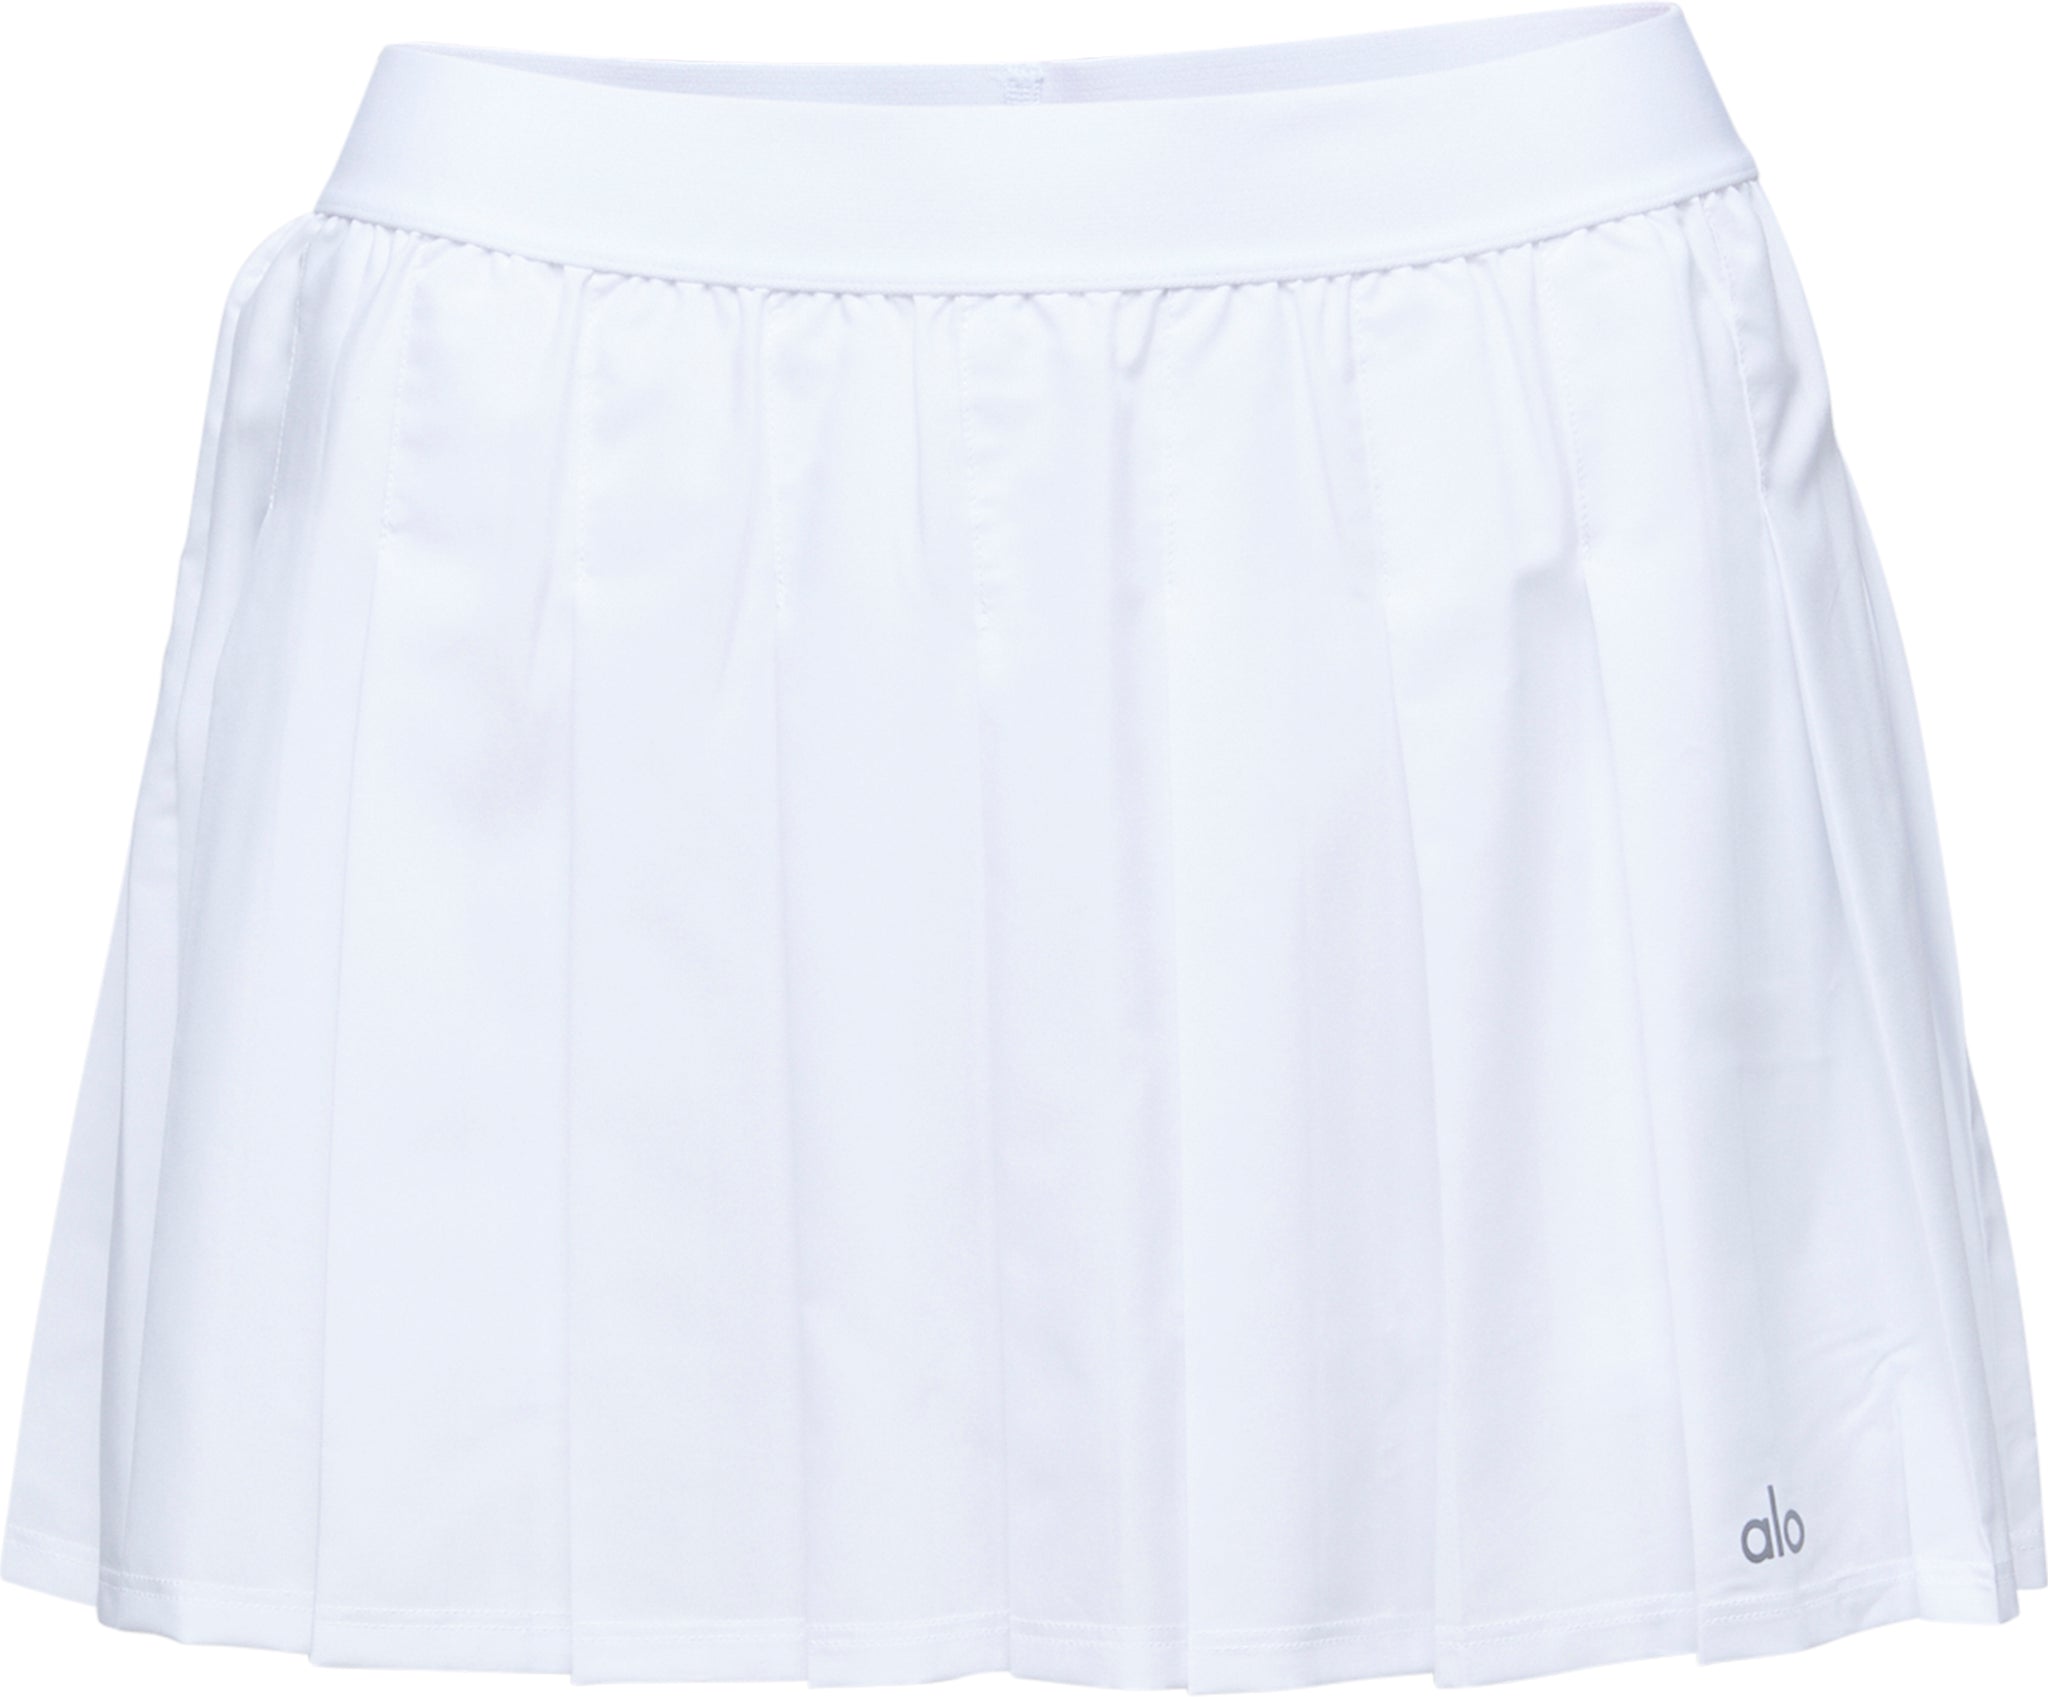 Alo Yoga Varsity Tennis Skirt - Women's